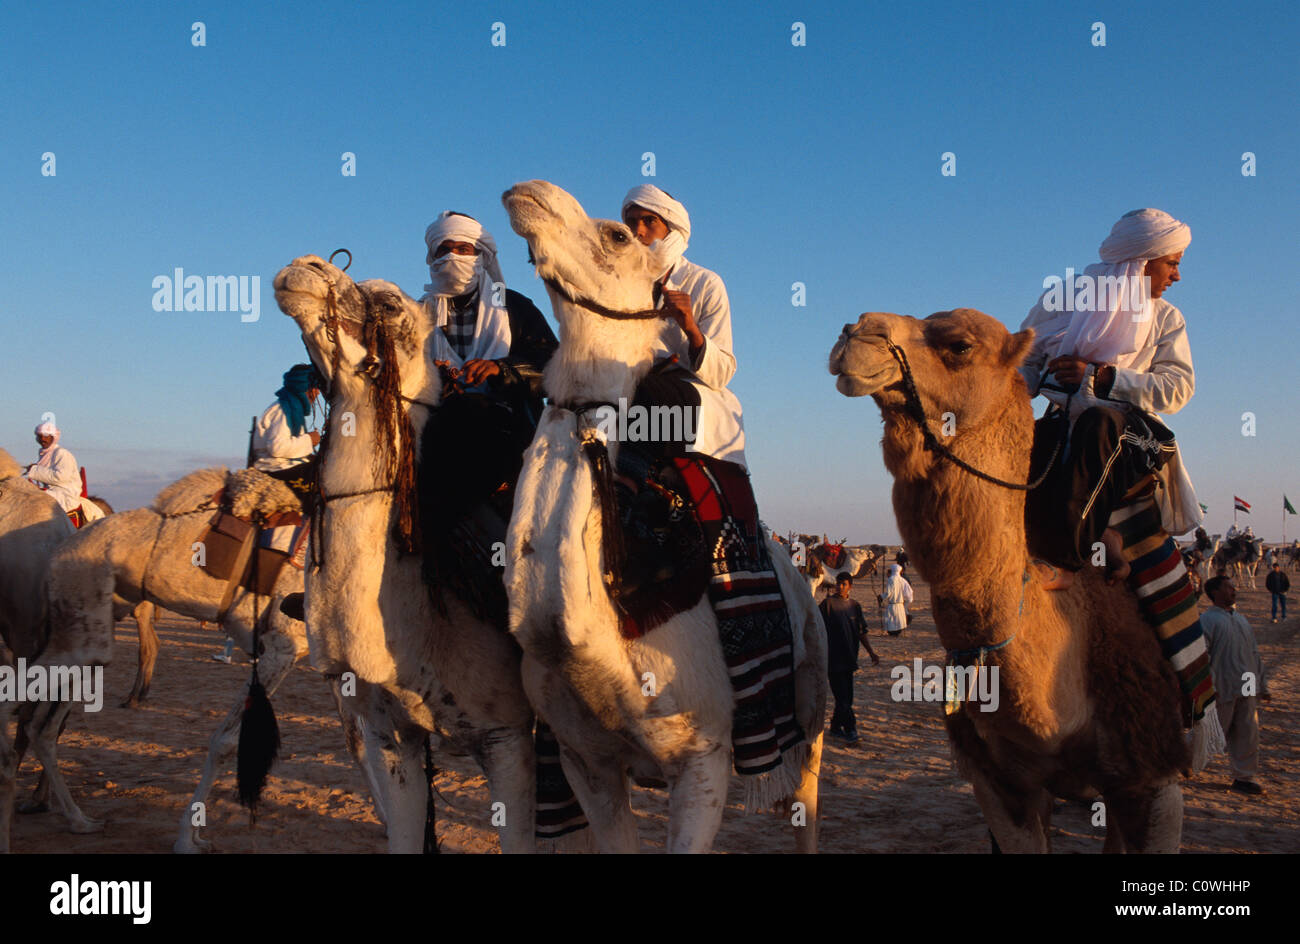 Festival in Douz, Tunisia Stock Photo